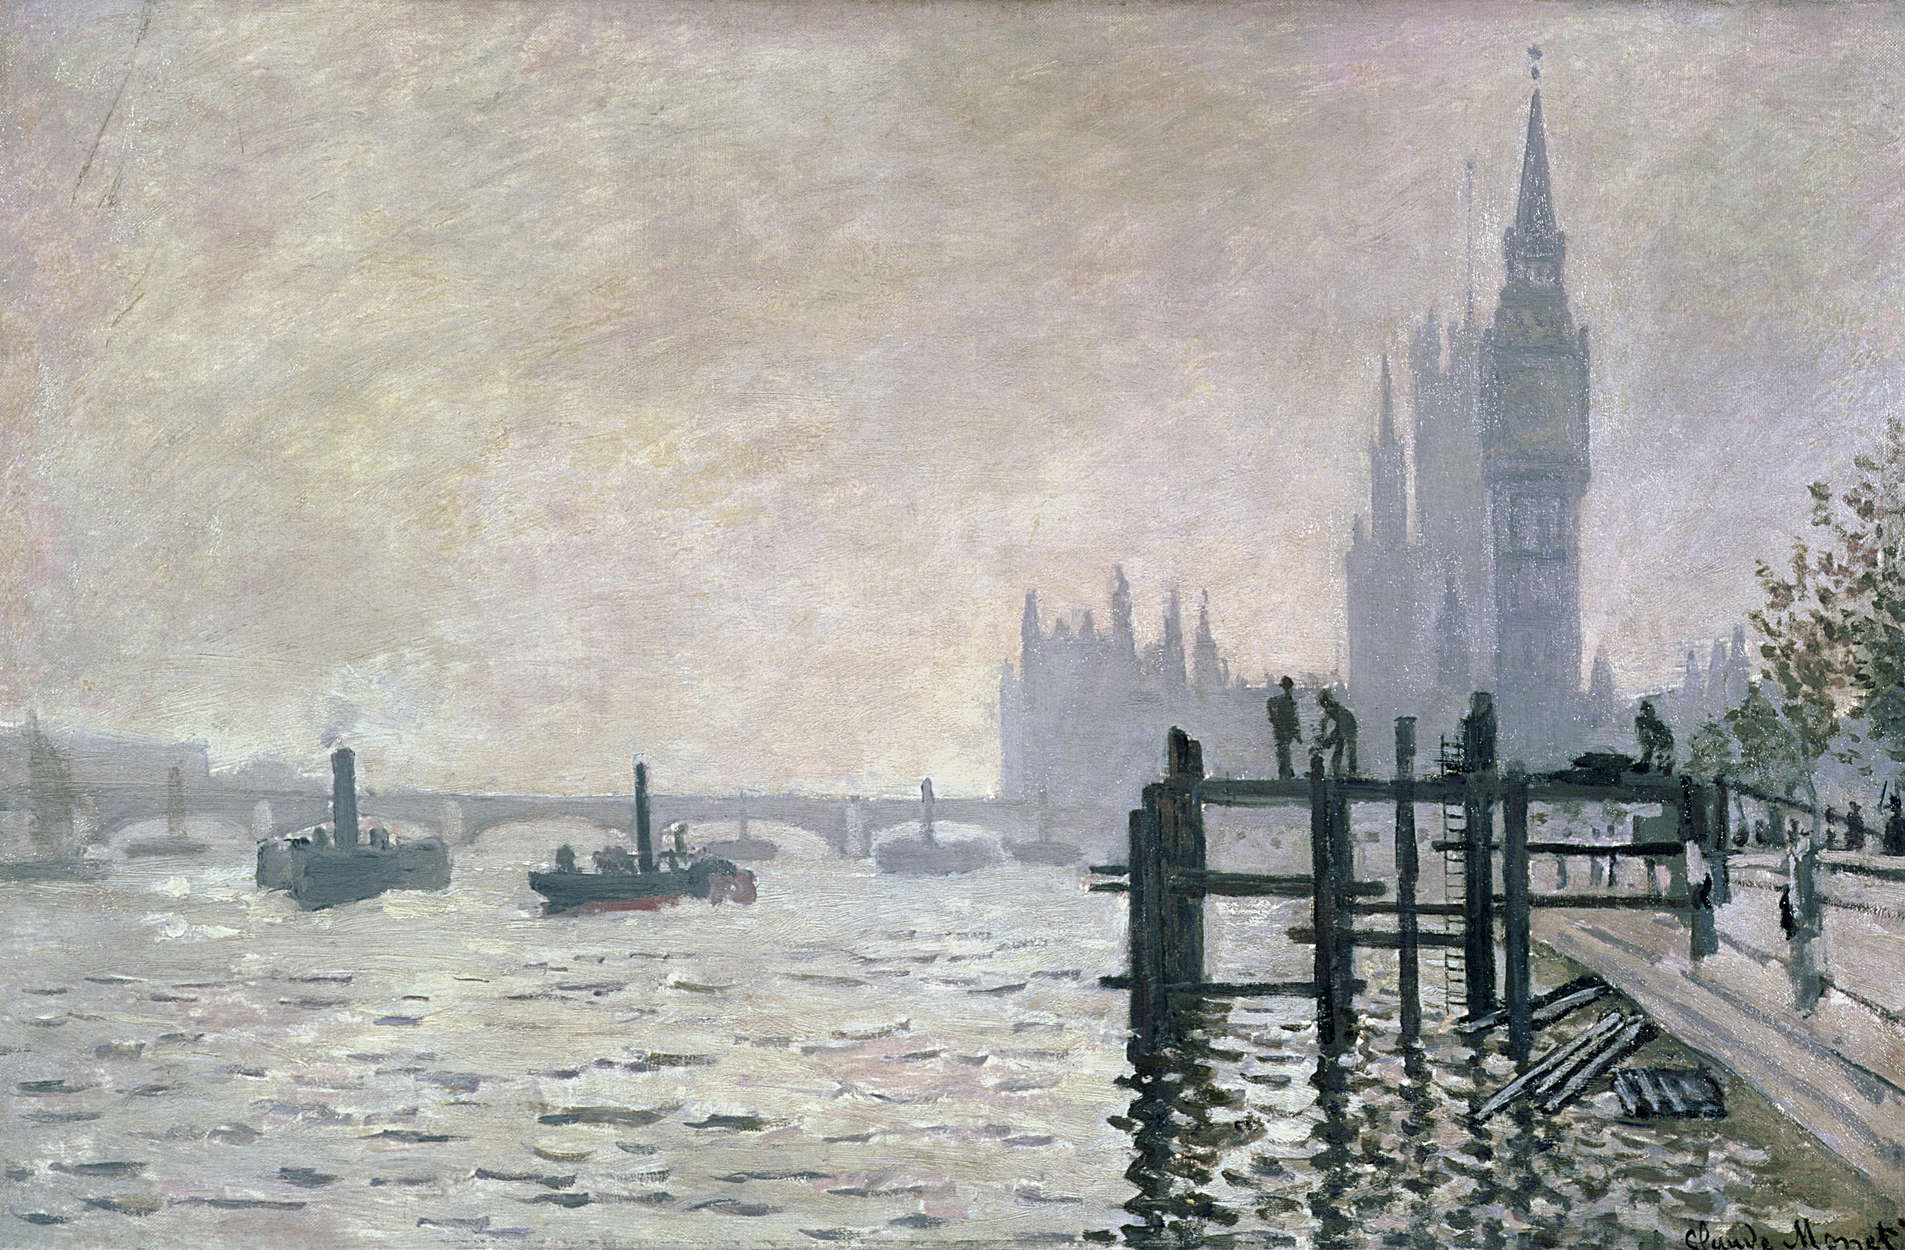             Muurschildering "De Theems onder Westminster" door Claude Monet
        